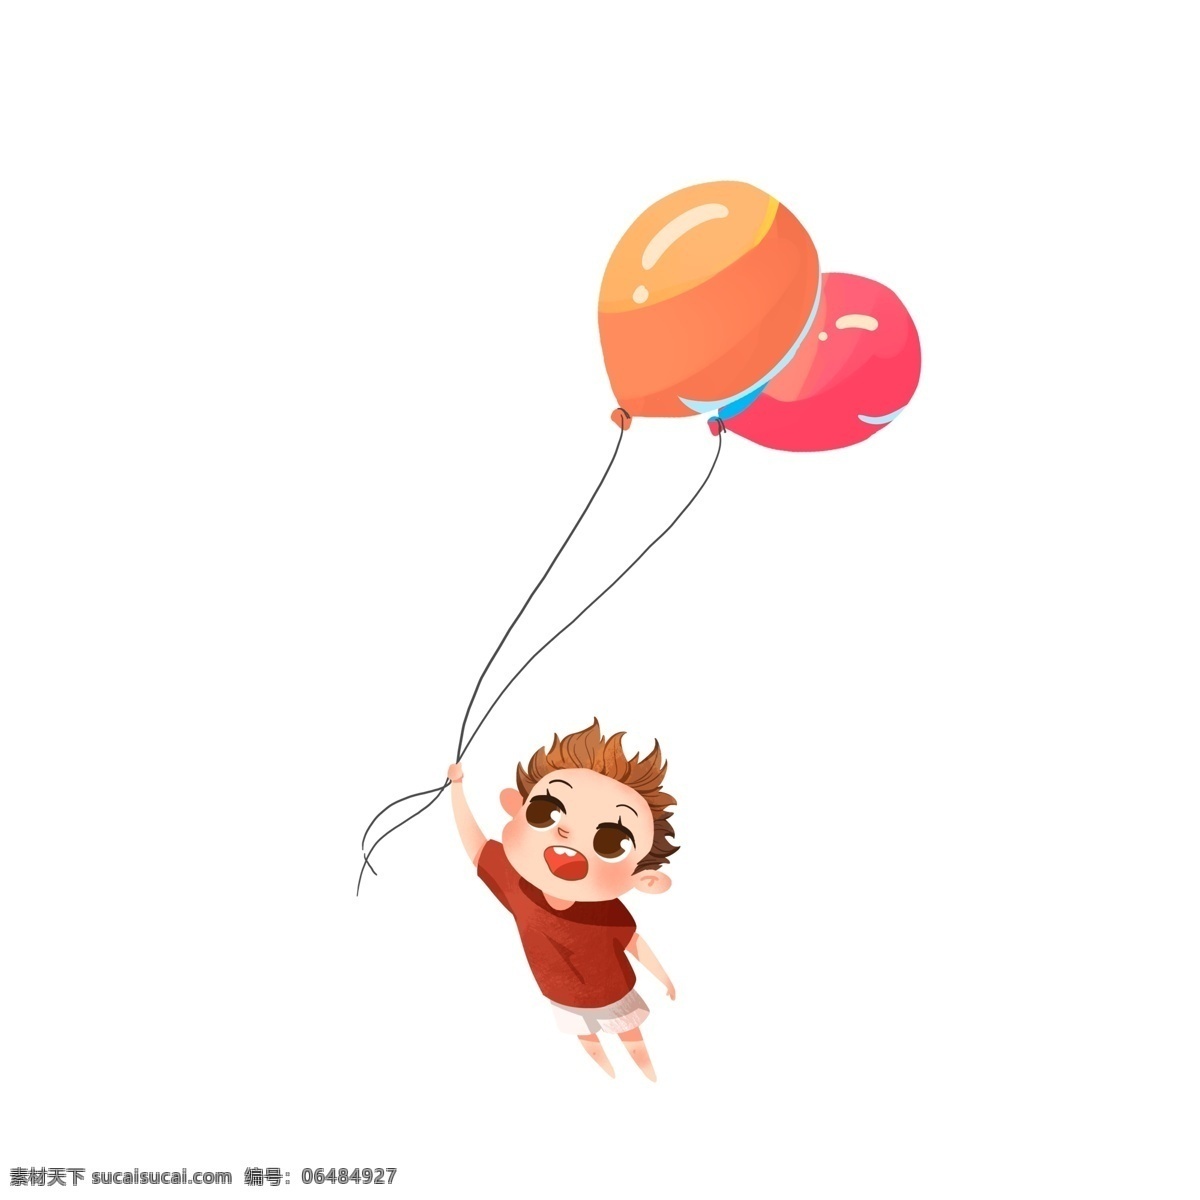 快乐 61 束 气球 小 男孩 卡通 快乐六一 插画 儿童 节日